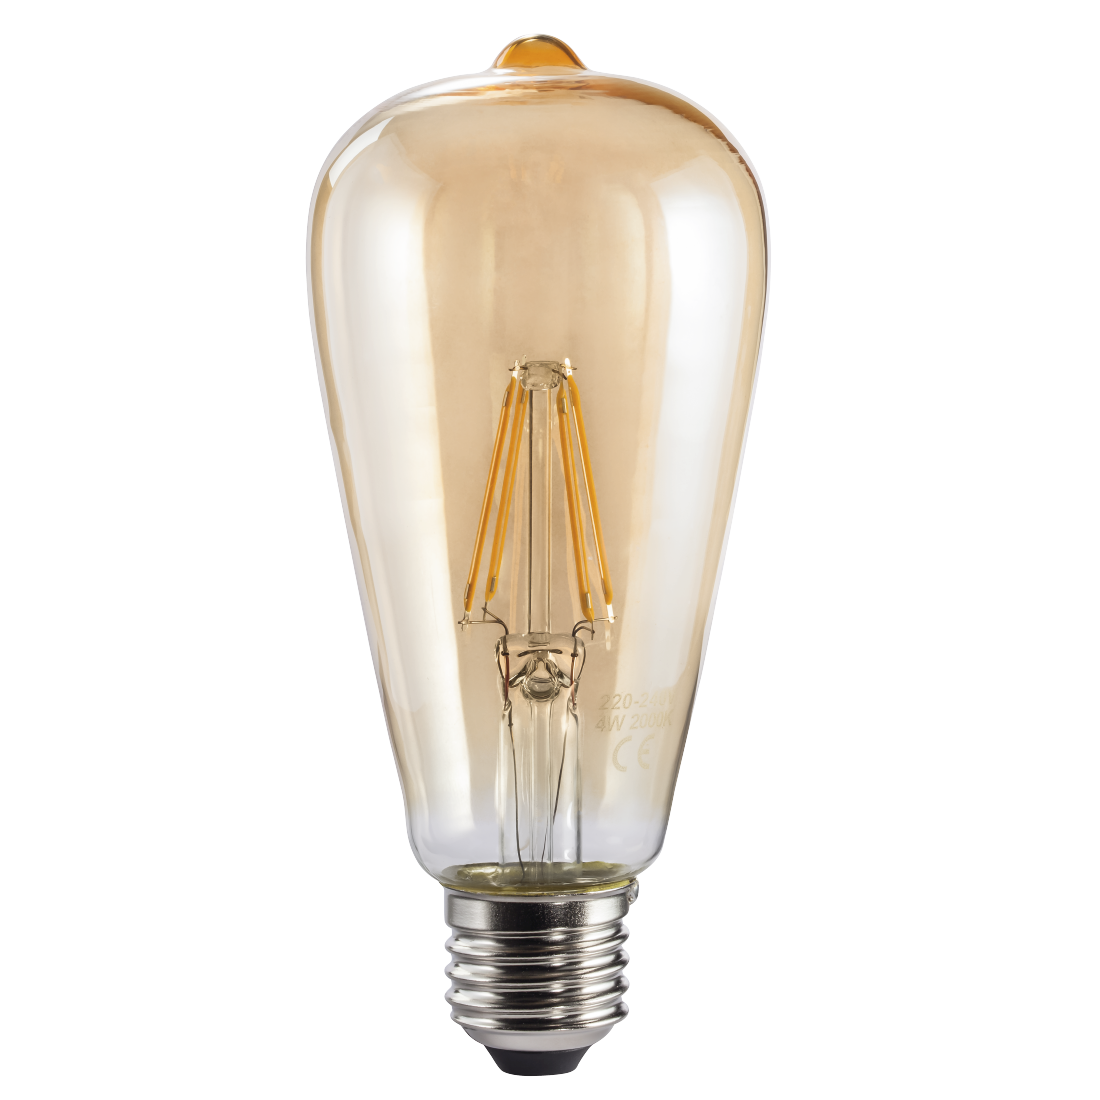 abx High-Res Image - Xavax, Ampoule filam. LED, E27, 410lm remp. 36W, amp. vintage, ambre, blc chd